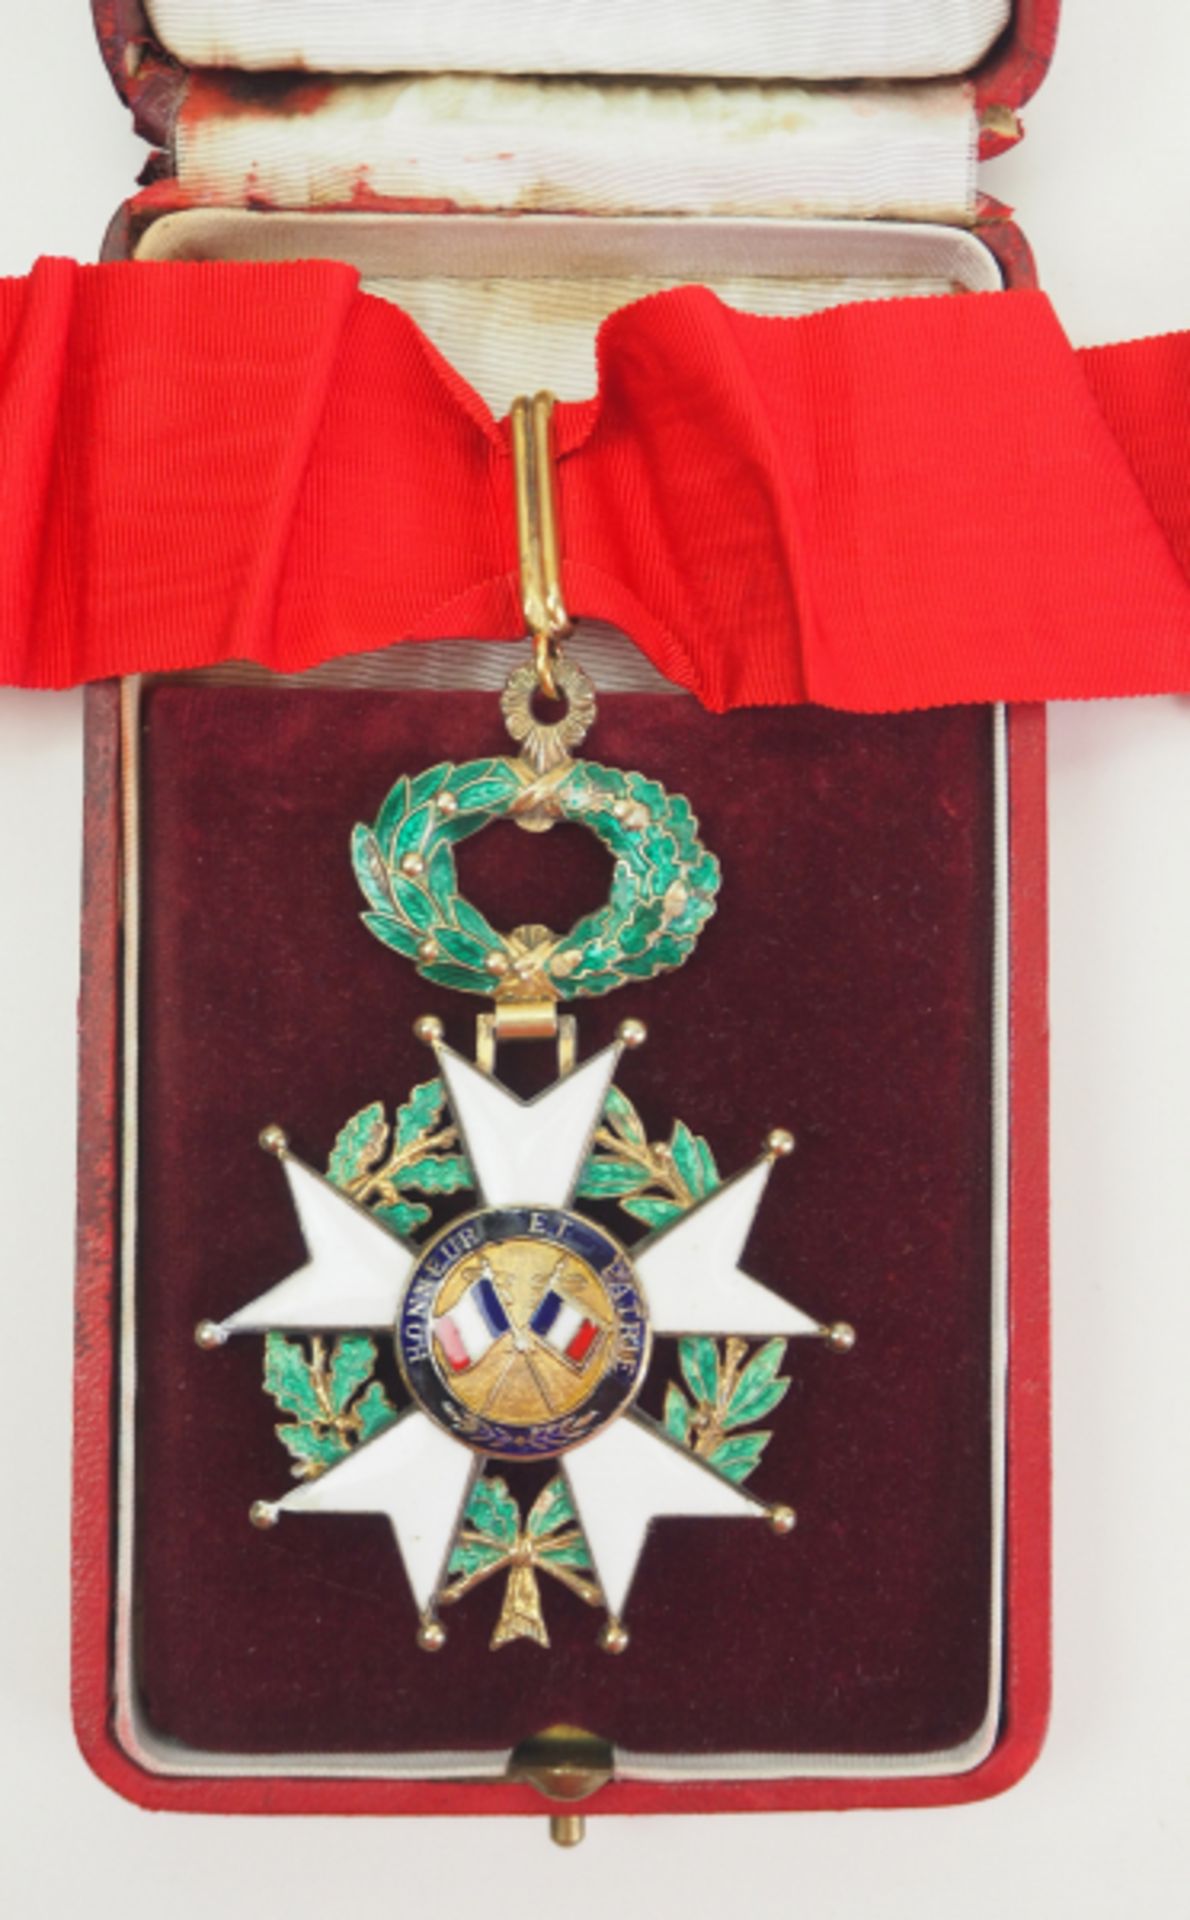 Frankreich: Orden der Ehrenlegion, 11. Modell (seit 1962), Komturkreuz, im Etui.Silber vergoldet, - Bild 3 aus 3